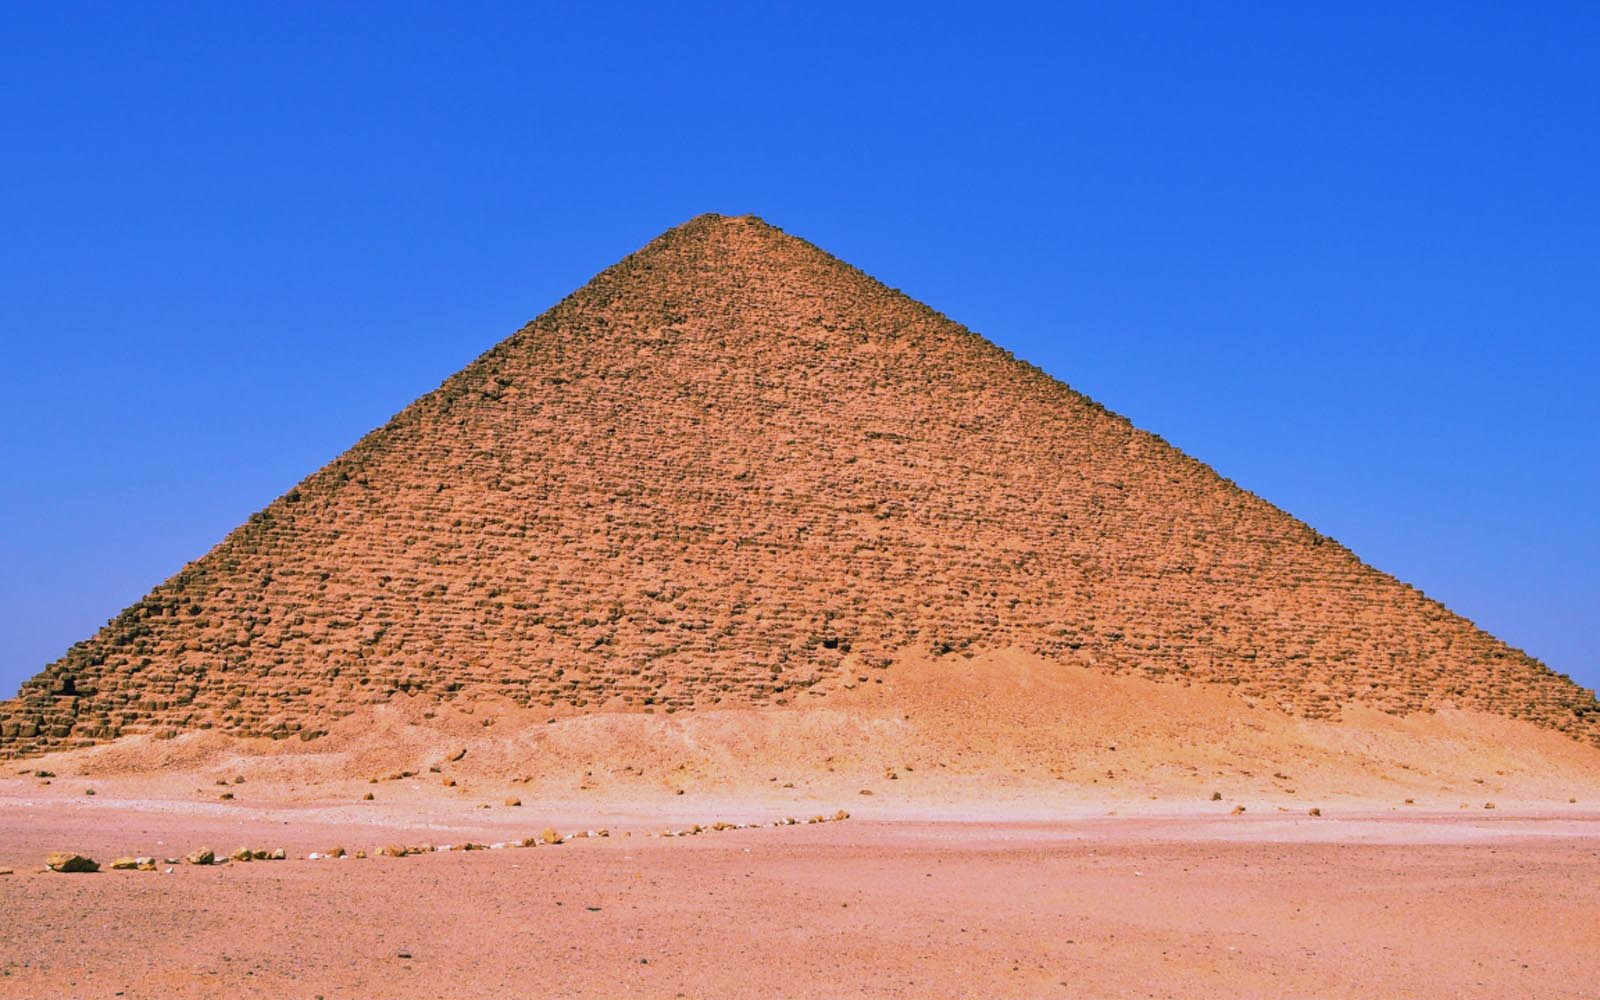 피라미드 벽지,피라미드,기념물,고대 역사,유네스코 세계 문화 유산,국립 기념물